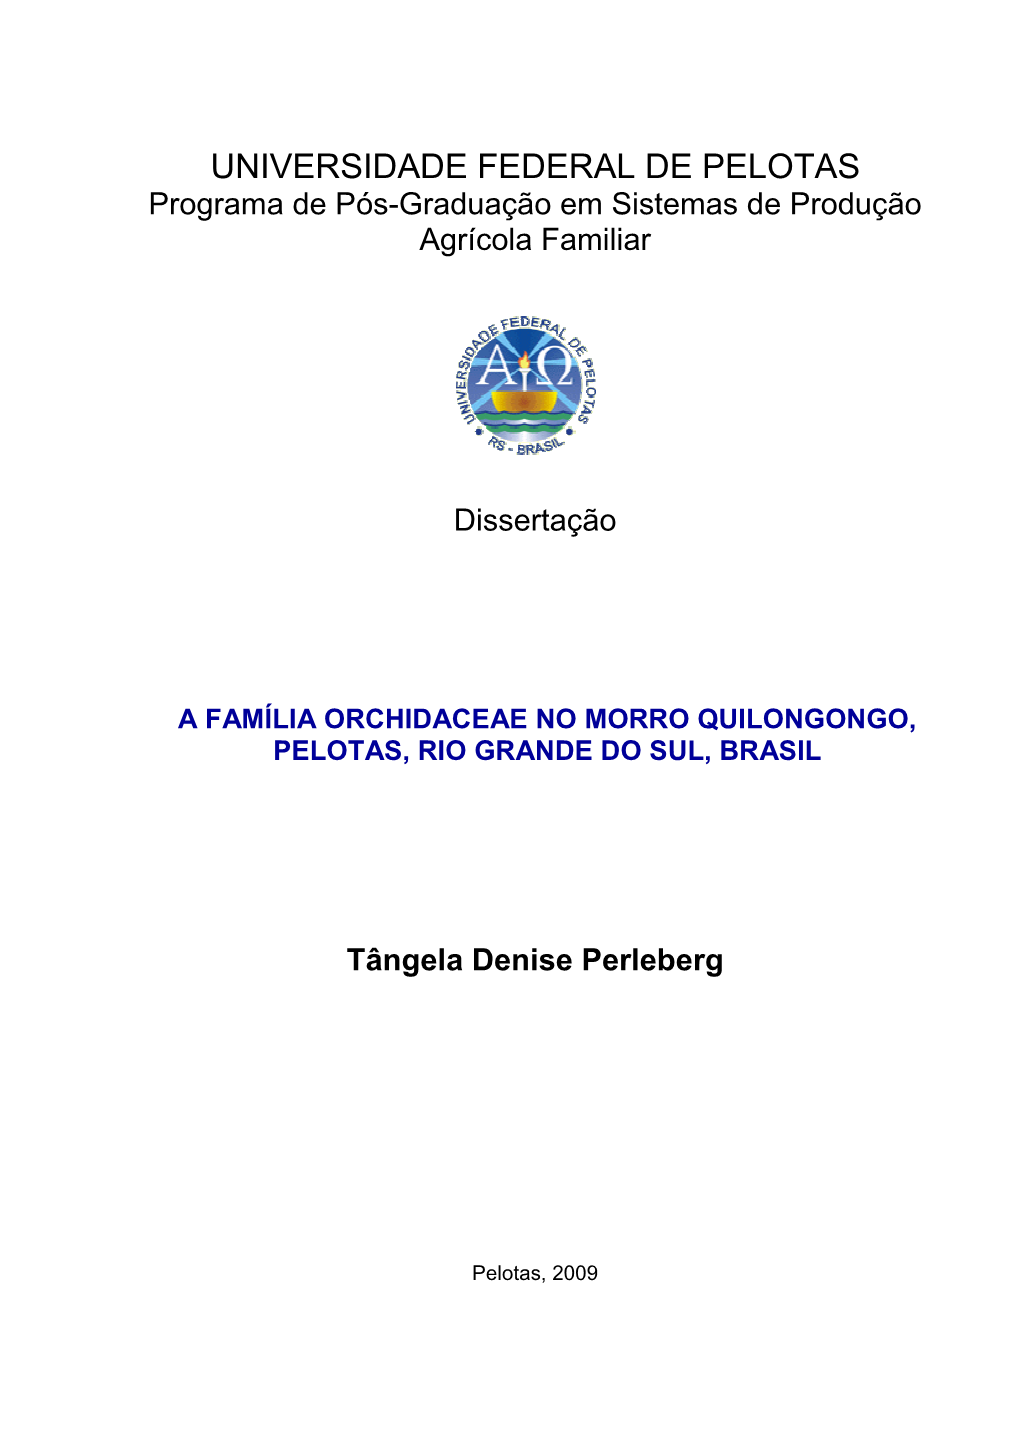 UNIVERSIDADE FEDERAL DE PELOTAS Programa De Pós-Graduação Em Sistemas De Produção Agrícola Familiar